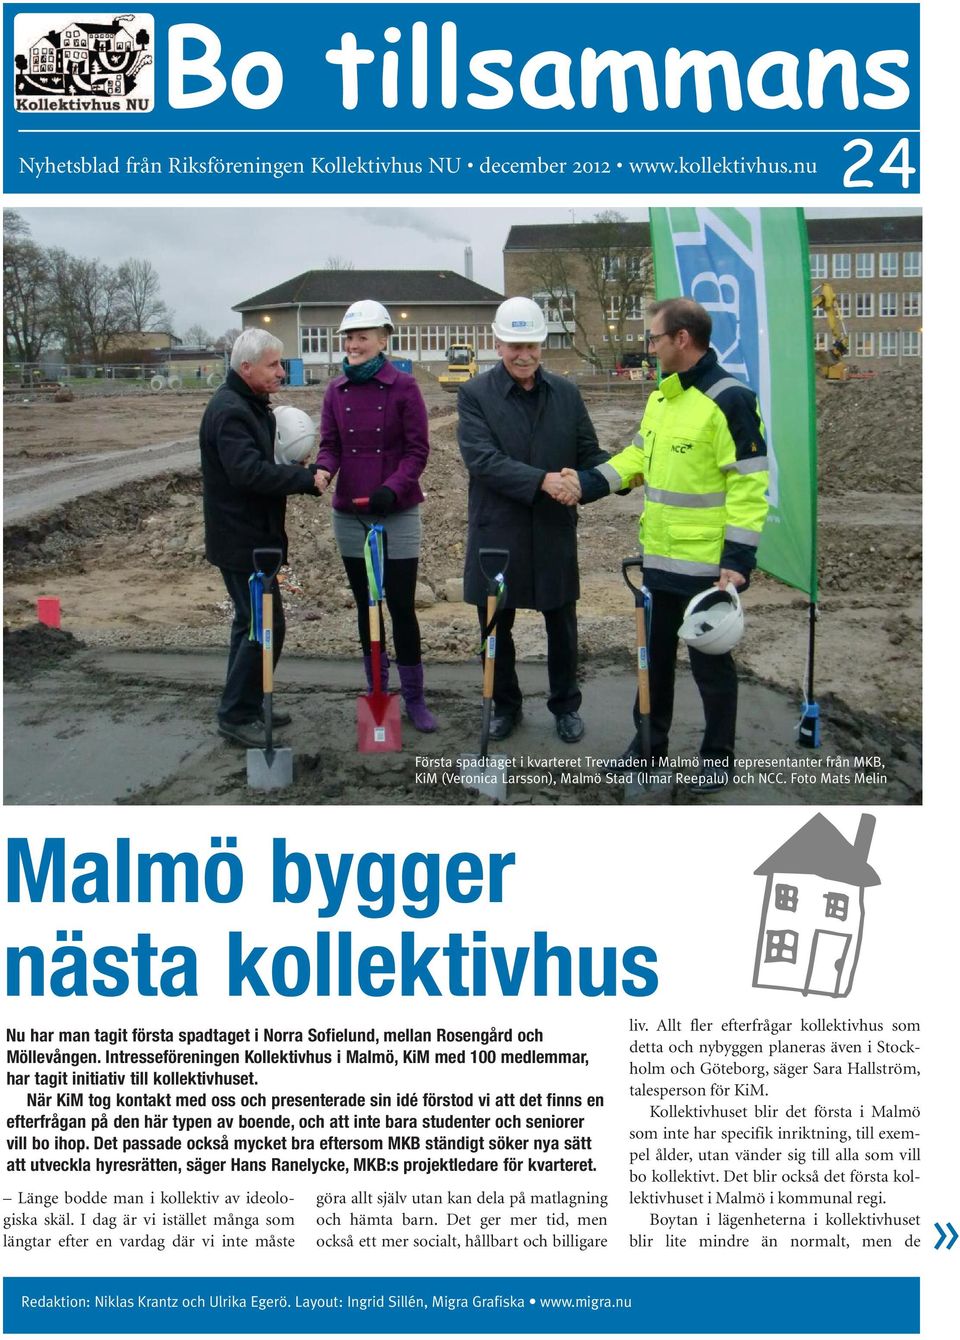 Foto Mats Melin Malmö bygger nästa kollektivhus e Nu har man tagit första spadtaget i Norra Sofielund, mellan Rosengård och Möllevången.